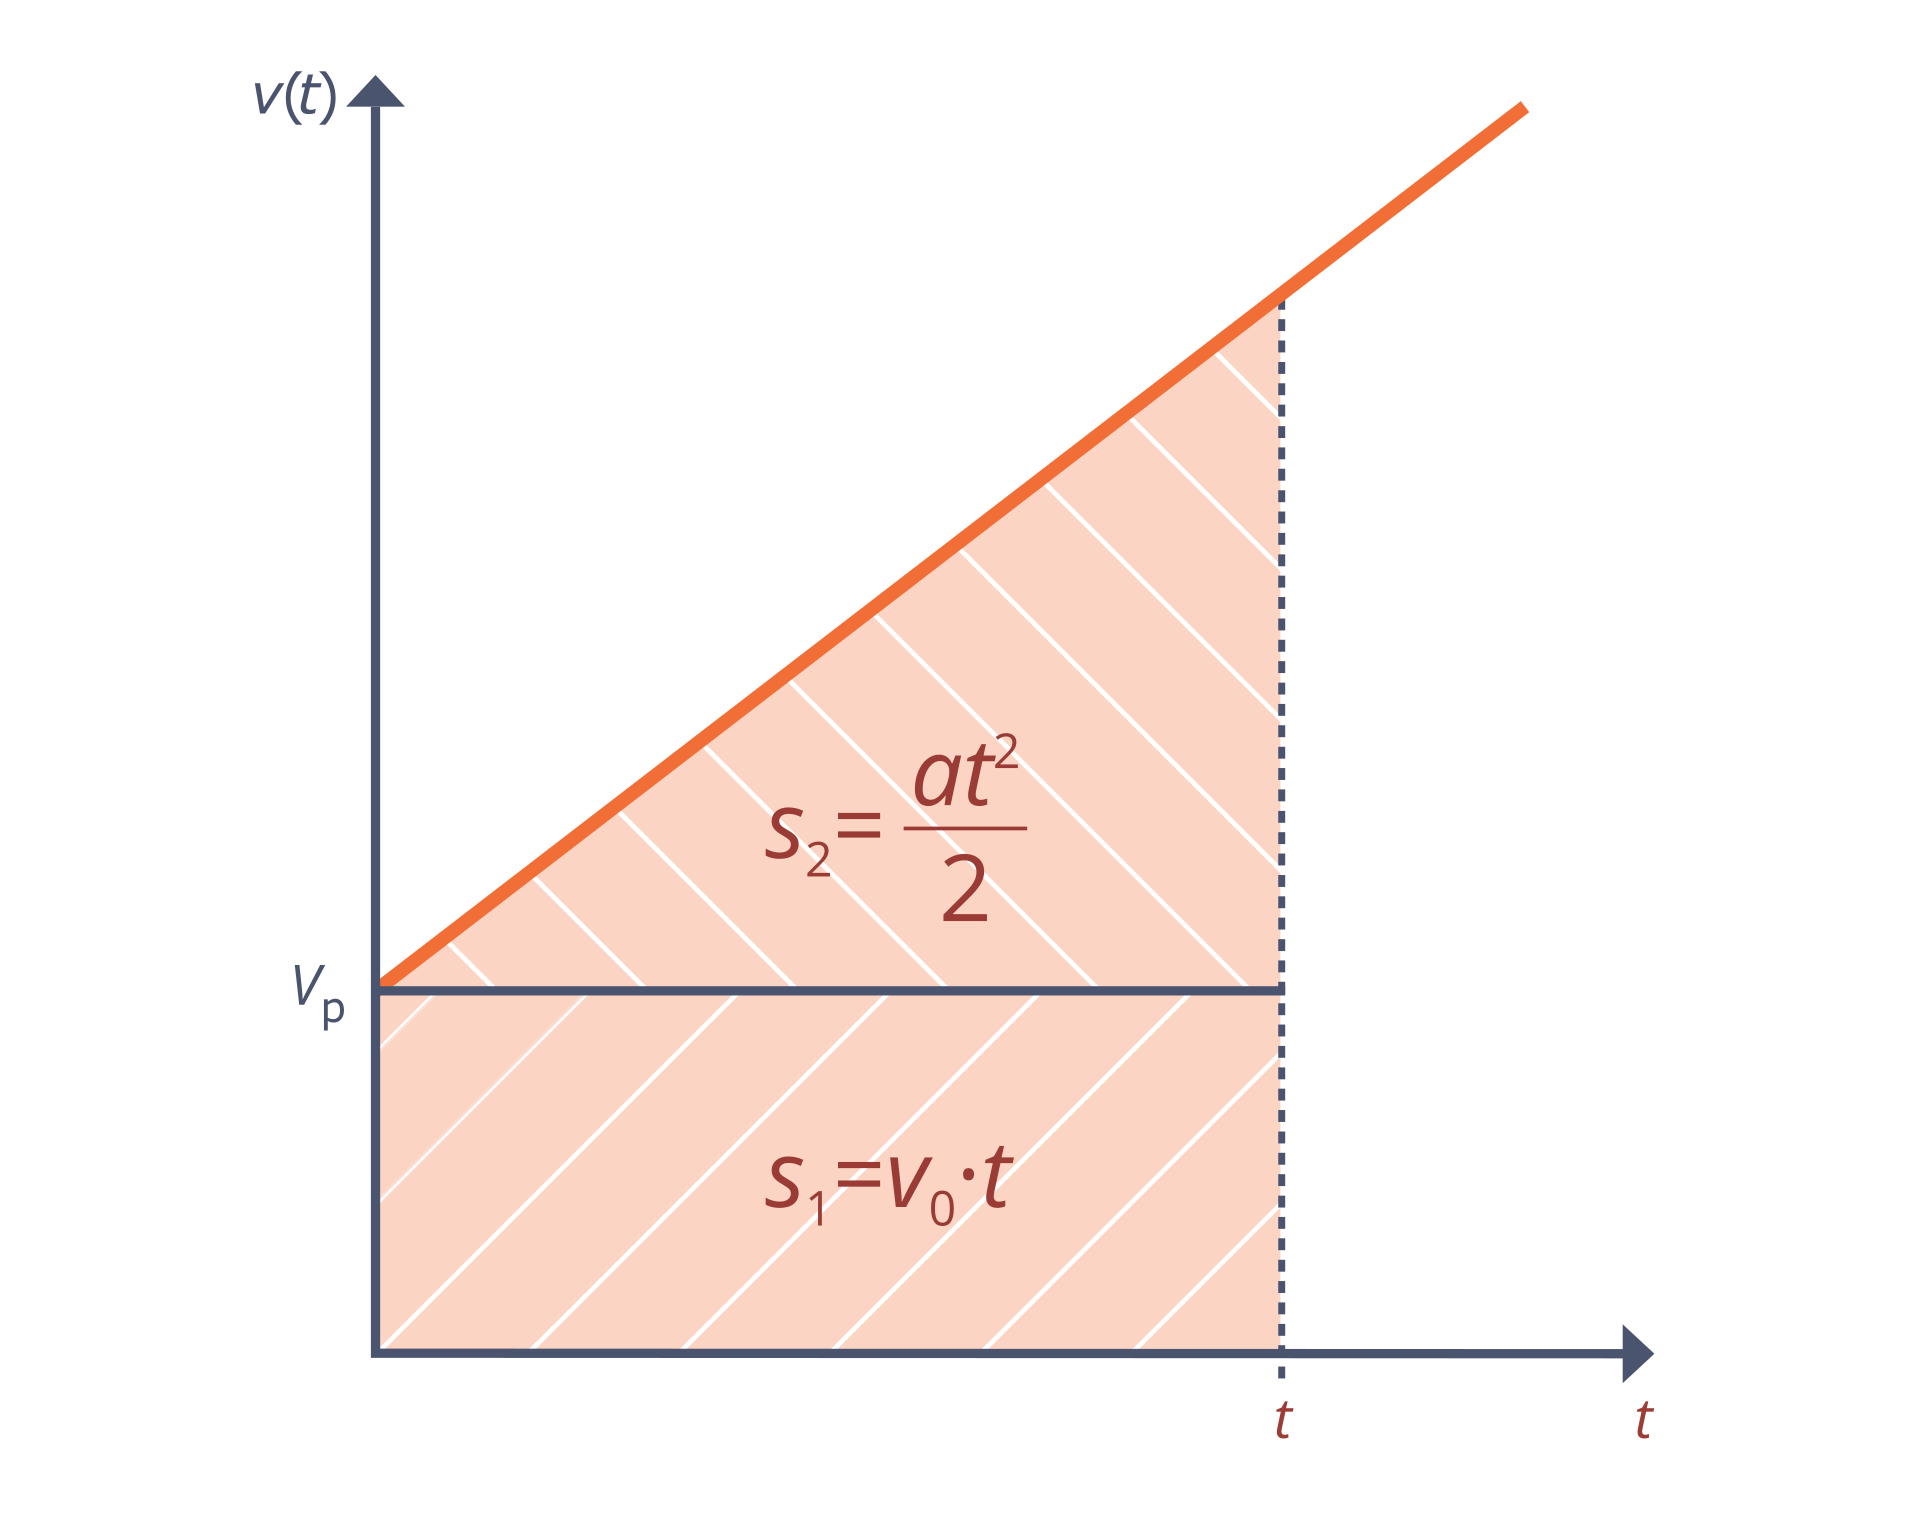 Schemat przedstawia wykres. Tło białe. Oś odciętych opisane „t”. Oś rzędnych opisane „v (t)”. Na wykresie narysowano pomarańczowy prostokąt i trójkąt prostokątny. Na osi odciętych zaznaczono punkt t, na osi rzędnych punkt vk. Prostokąt lewy dolny róg ma w początku układu współrzędnych. Wysokość od (0, 0) do (0, vk). Dłuższa przyprostokątna trójkąta pokrywa się z dłuższym, górnym bokiem prostokąta. Punkt vk jest wierzchołkiem trójkąta. Trójkąt z prostokątem tworzą trapez prostokątny. Krótsza podstawa leży na osi odciętych i ma długość vk. Wewnątrz prostokąta napisano wzór: s₁ = vk • t. Wewnątrz trójkąta napisano wzór: S₂ = (a • t do kwadratu)/2.